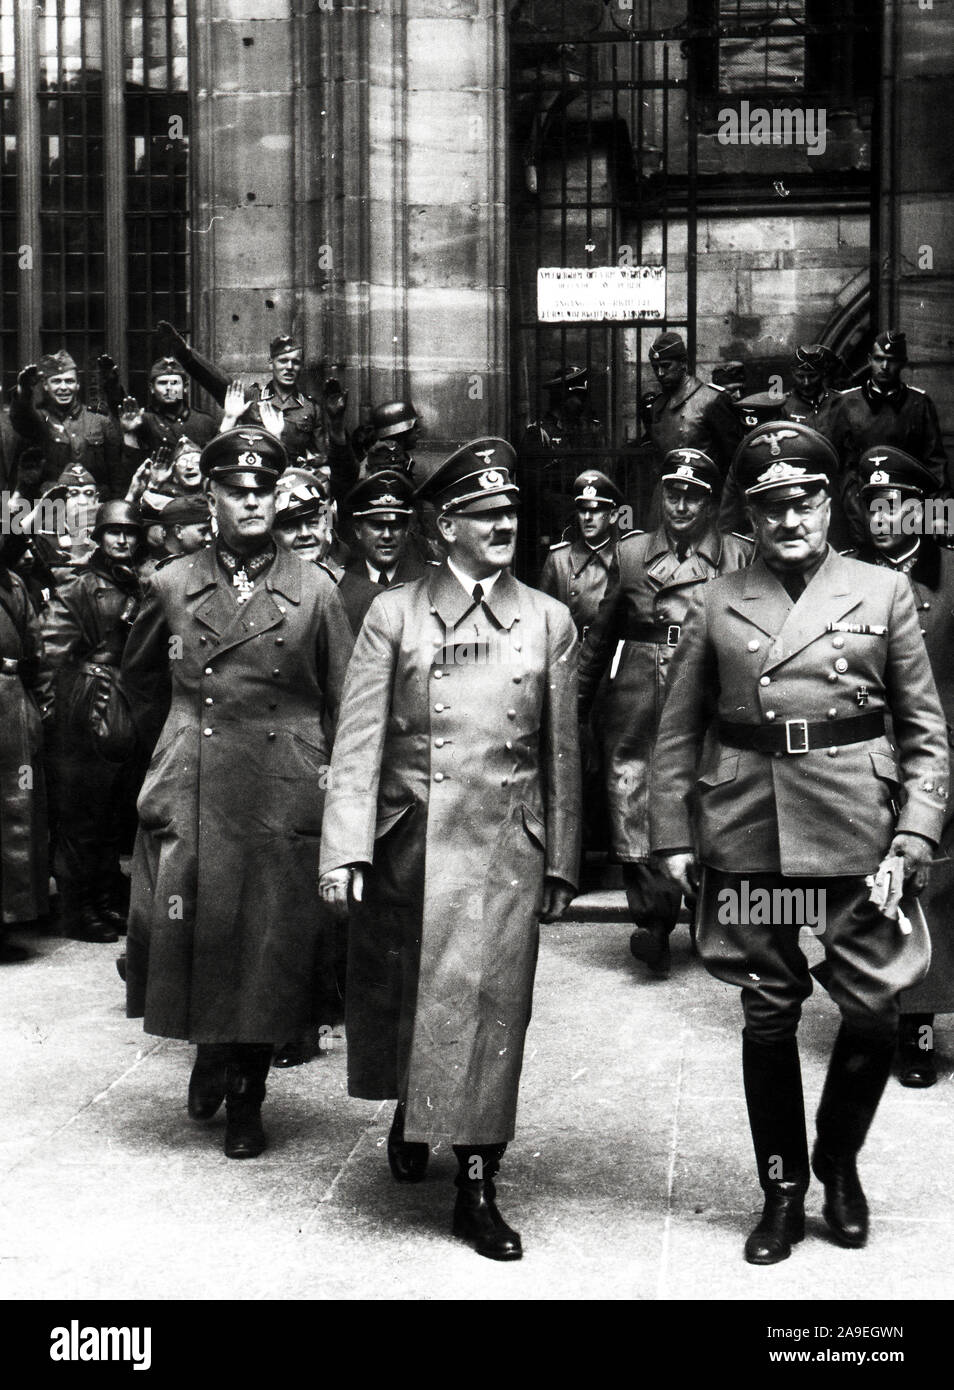 Eva Braun Collection (osam) - Adolf Hitler en uniforme militaire avec les troupes allemandes ou dirigeants ca. fin des années 1930 ou au début des années 1940 Banque D'Images